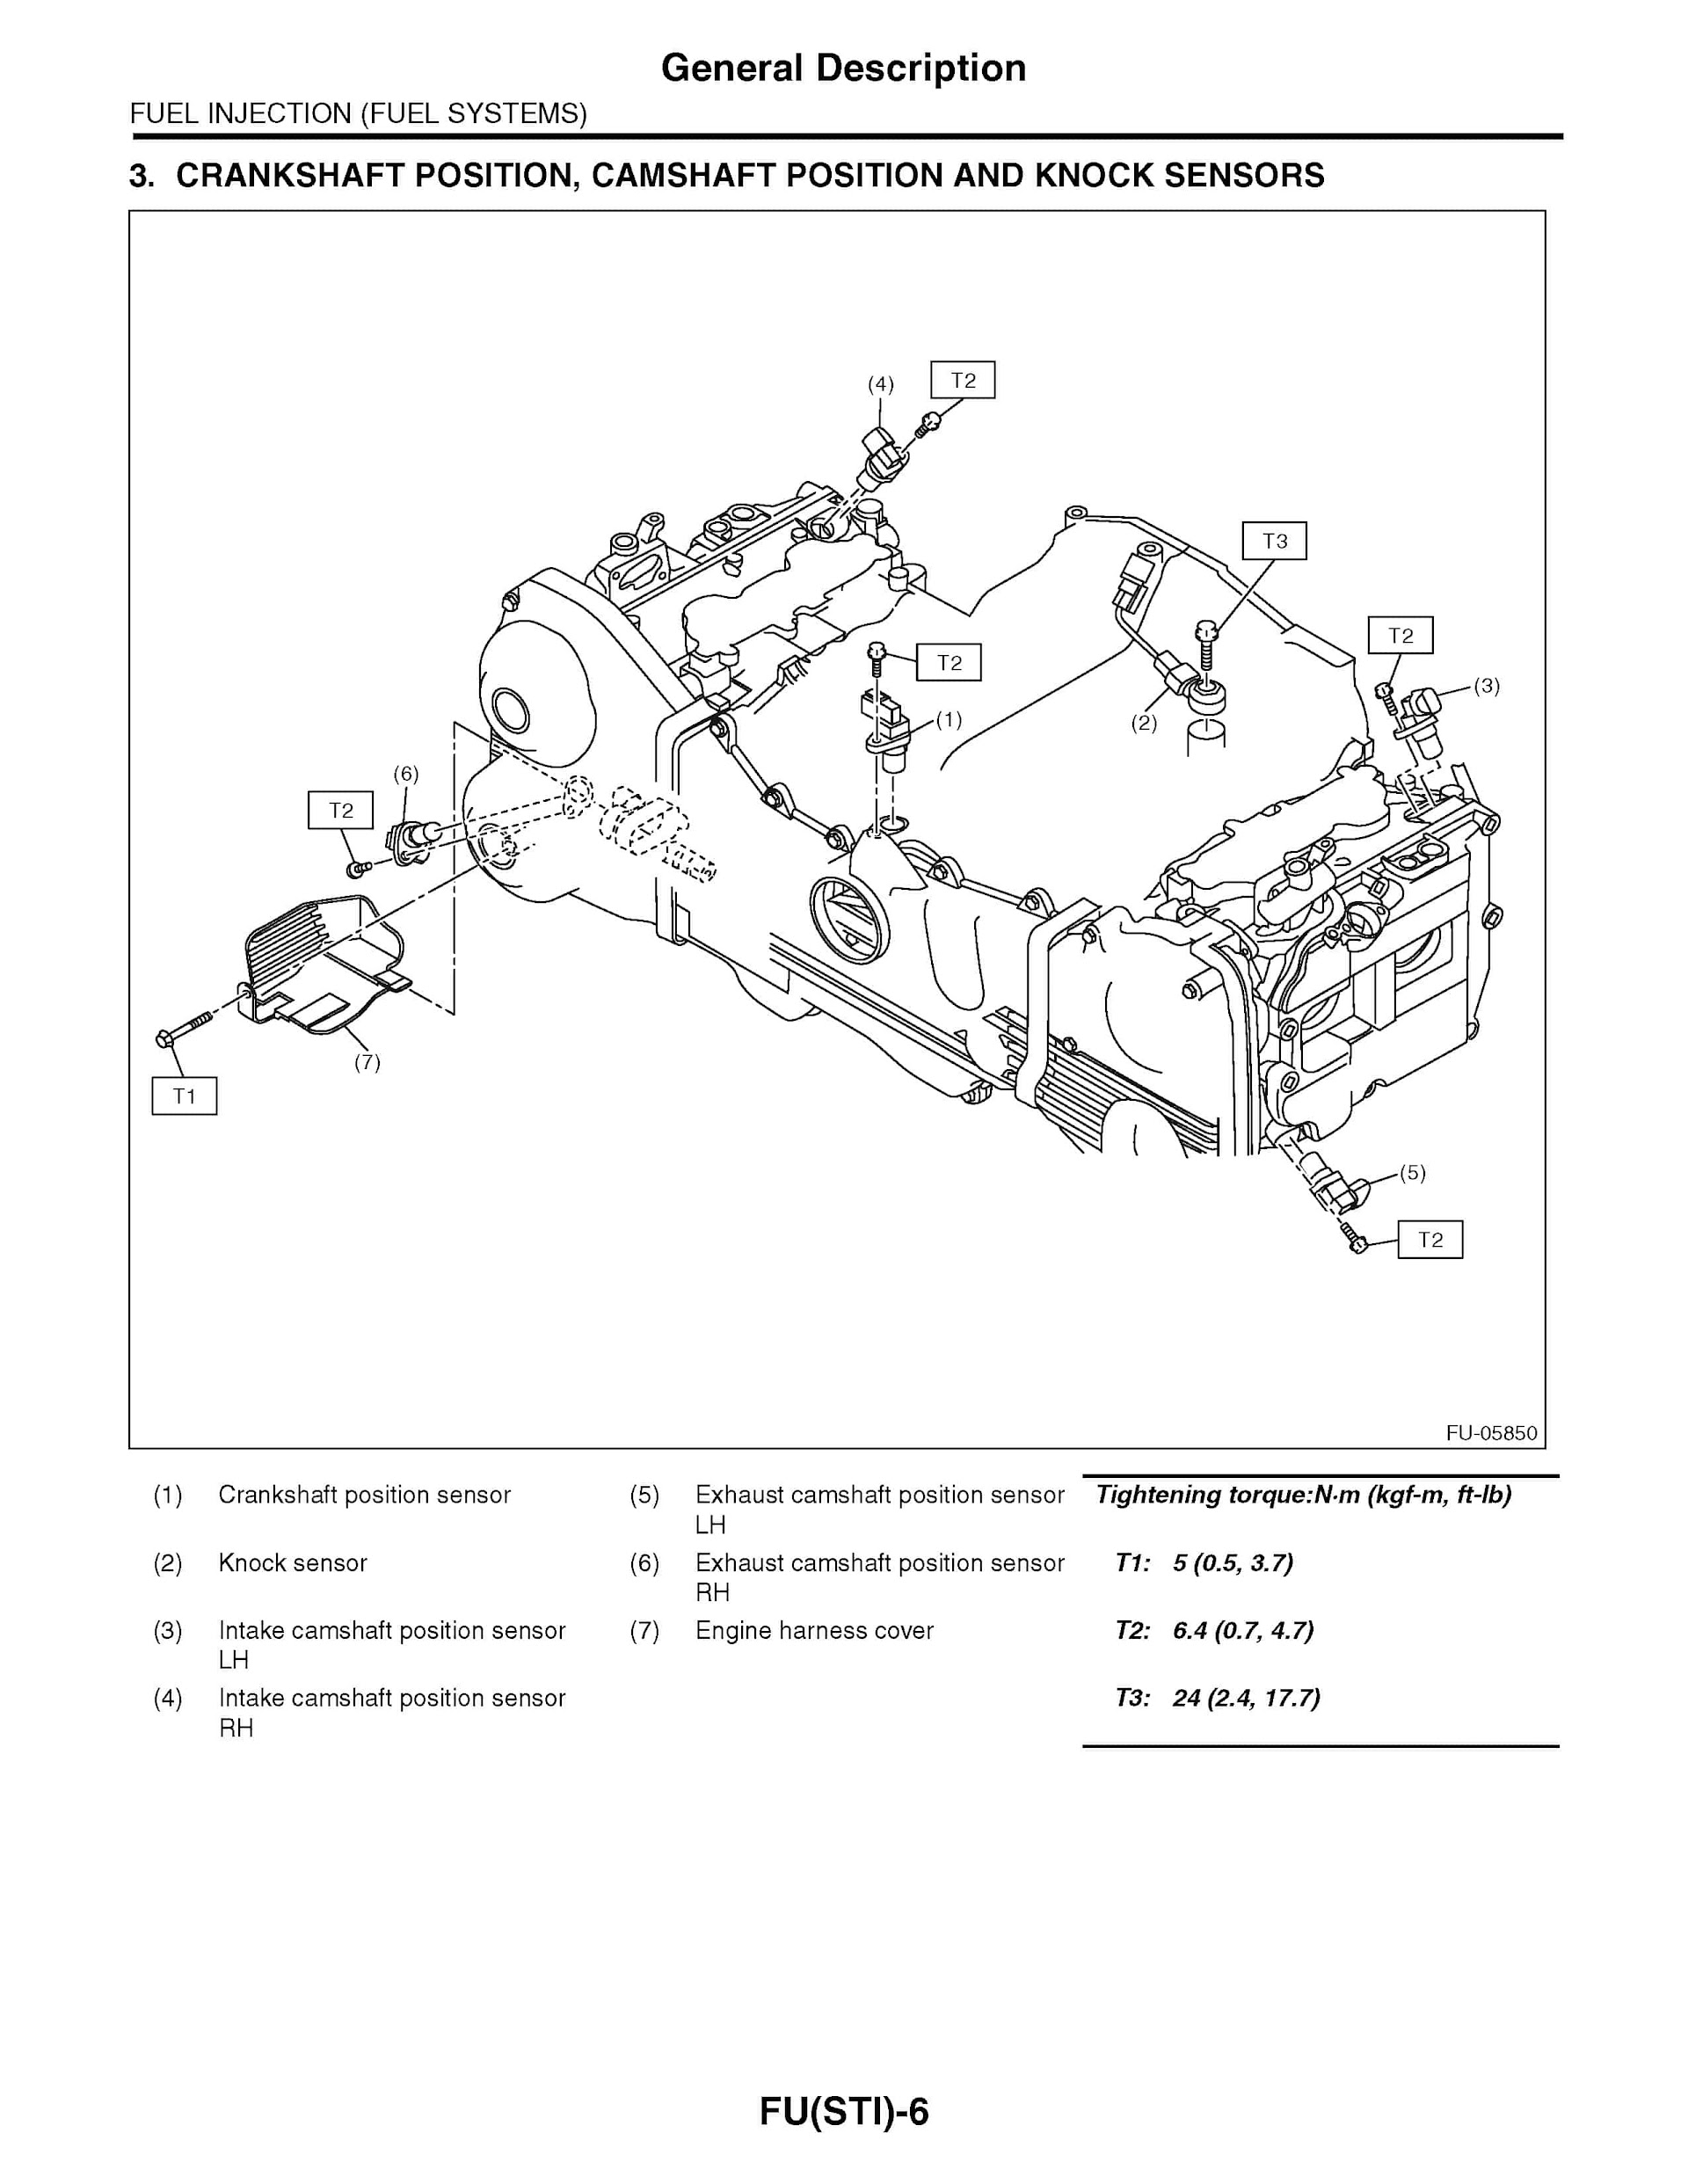 2011 Subaru Impreza Repair Manual (WRX and WRX STI), How To Use This Manual